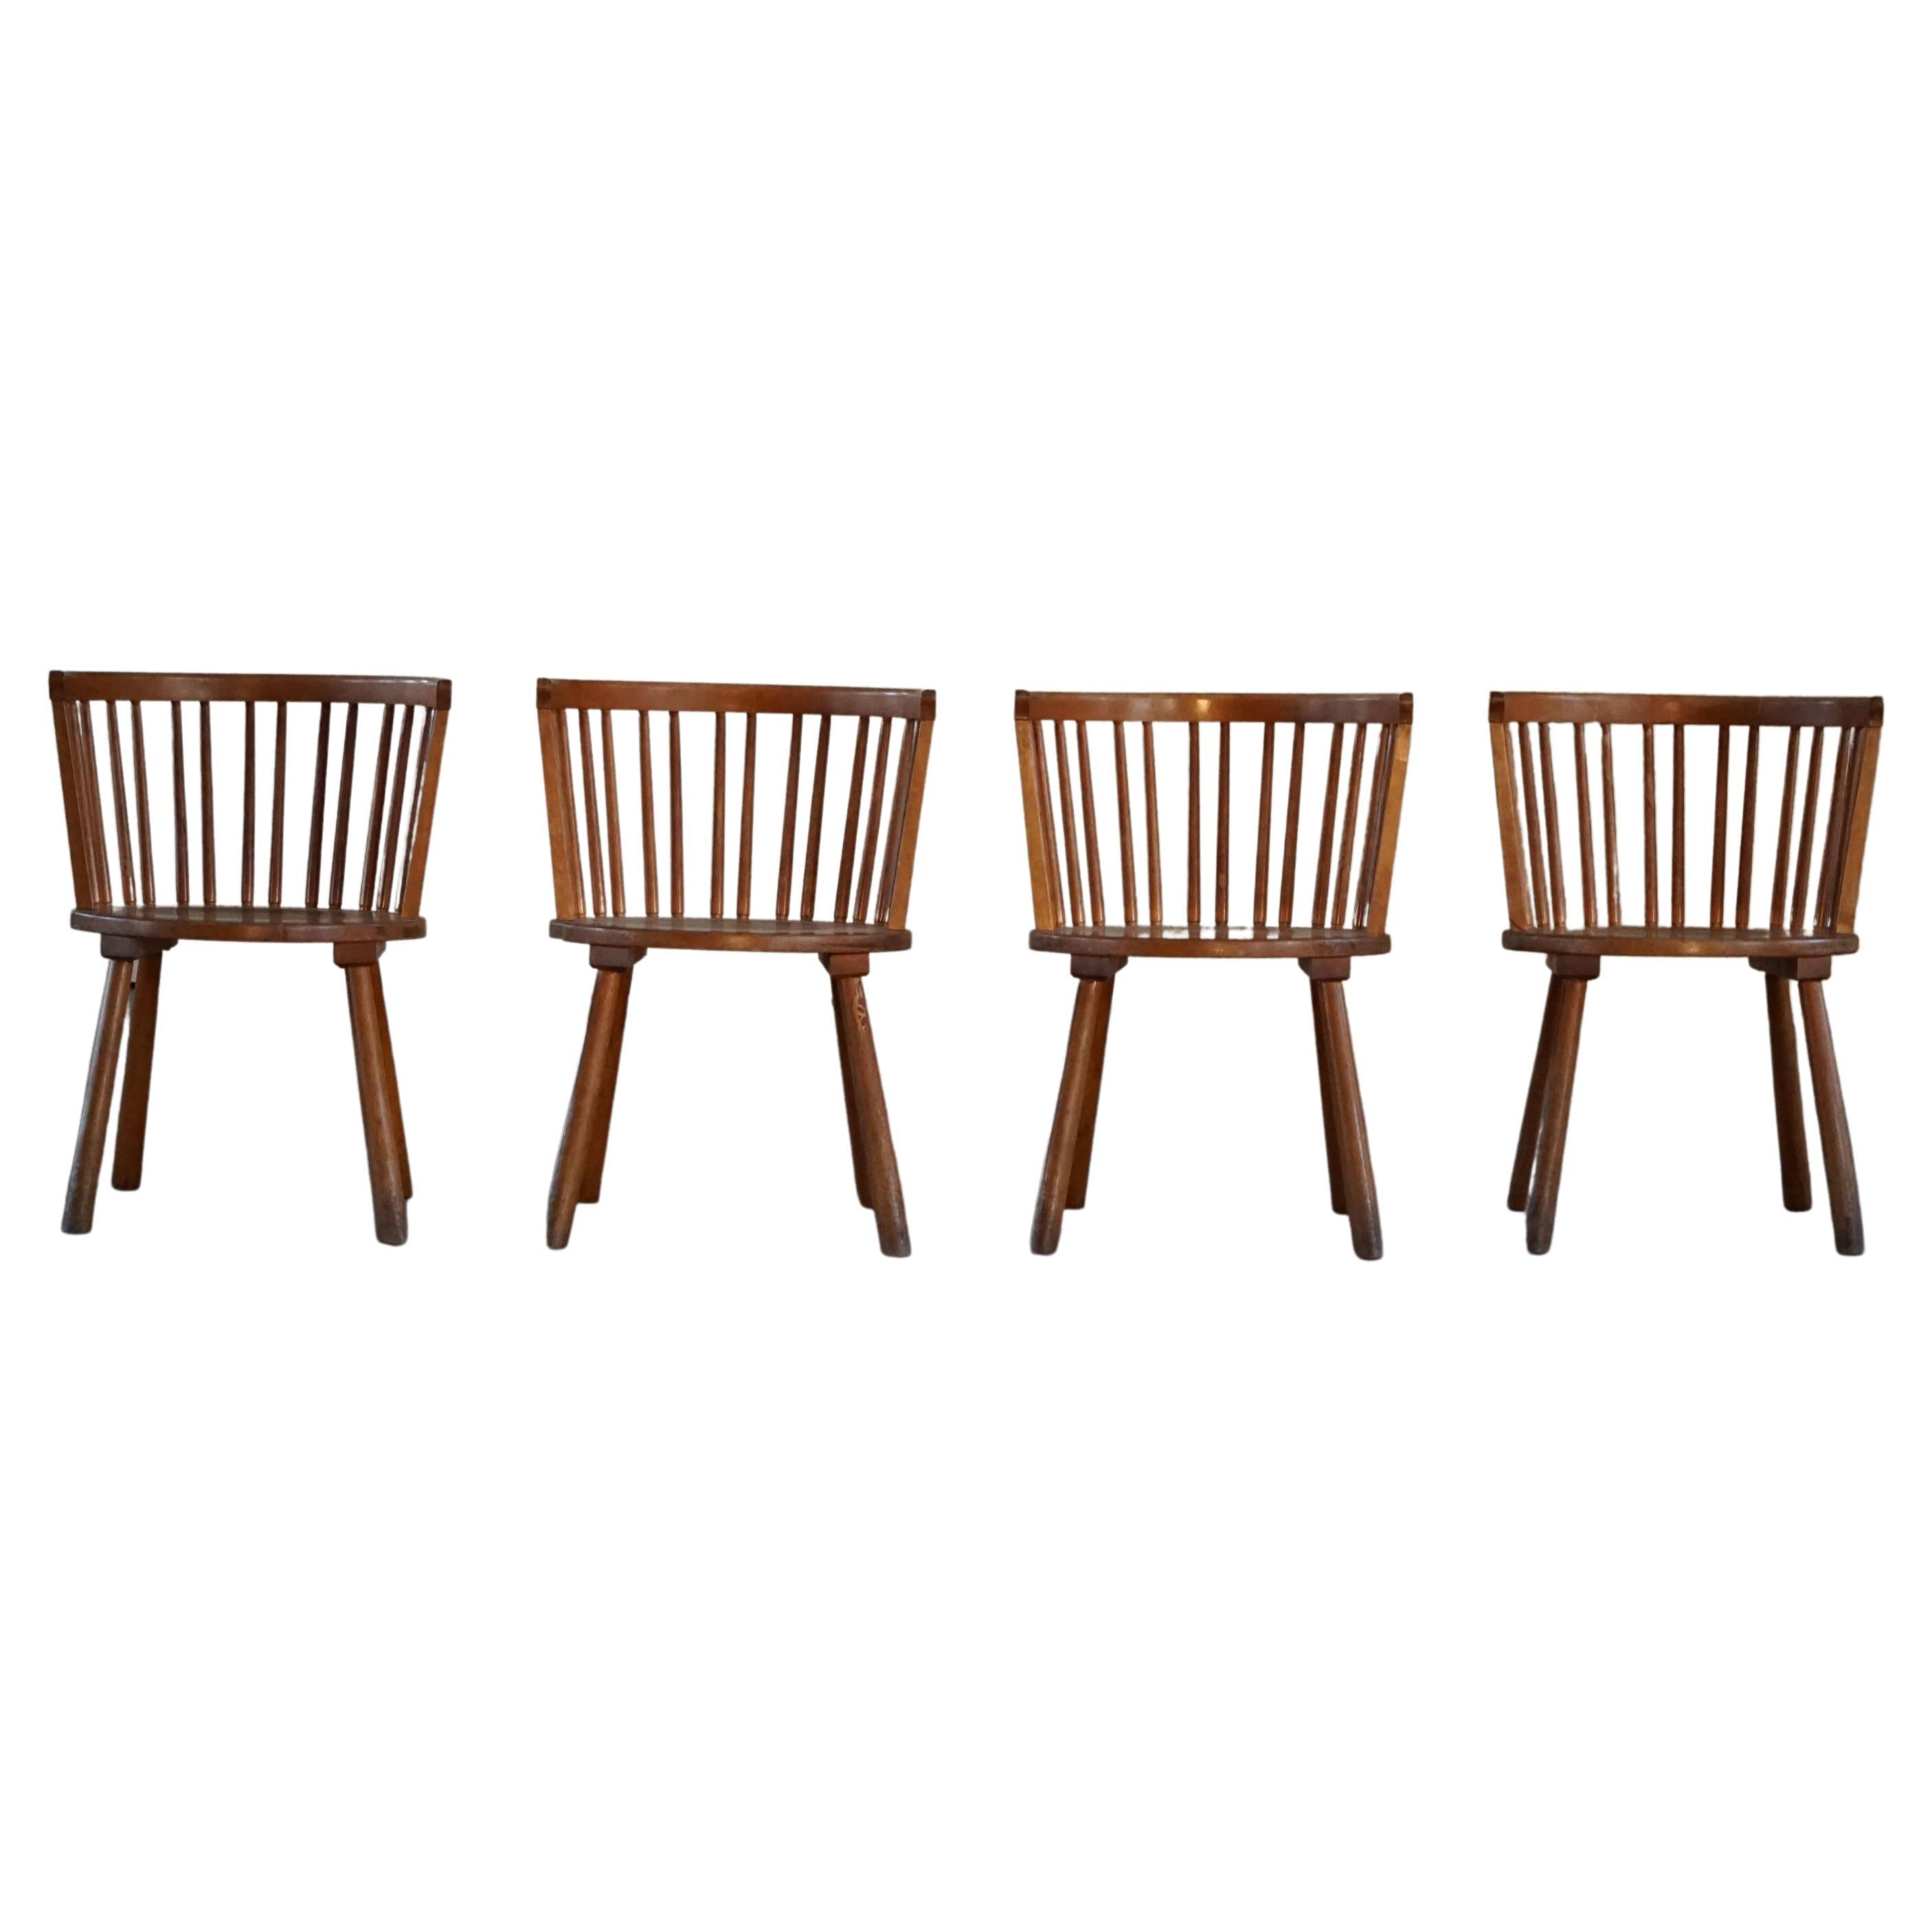 Ensemble moderne suédois de 4 fauteuils dans le style d'Axel Einar Hjorth, années 1930